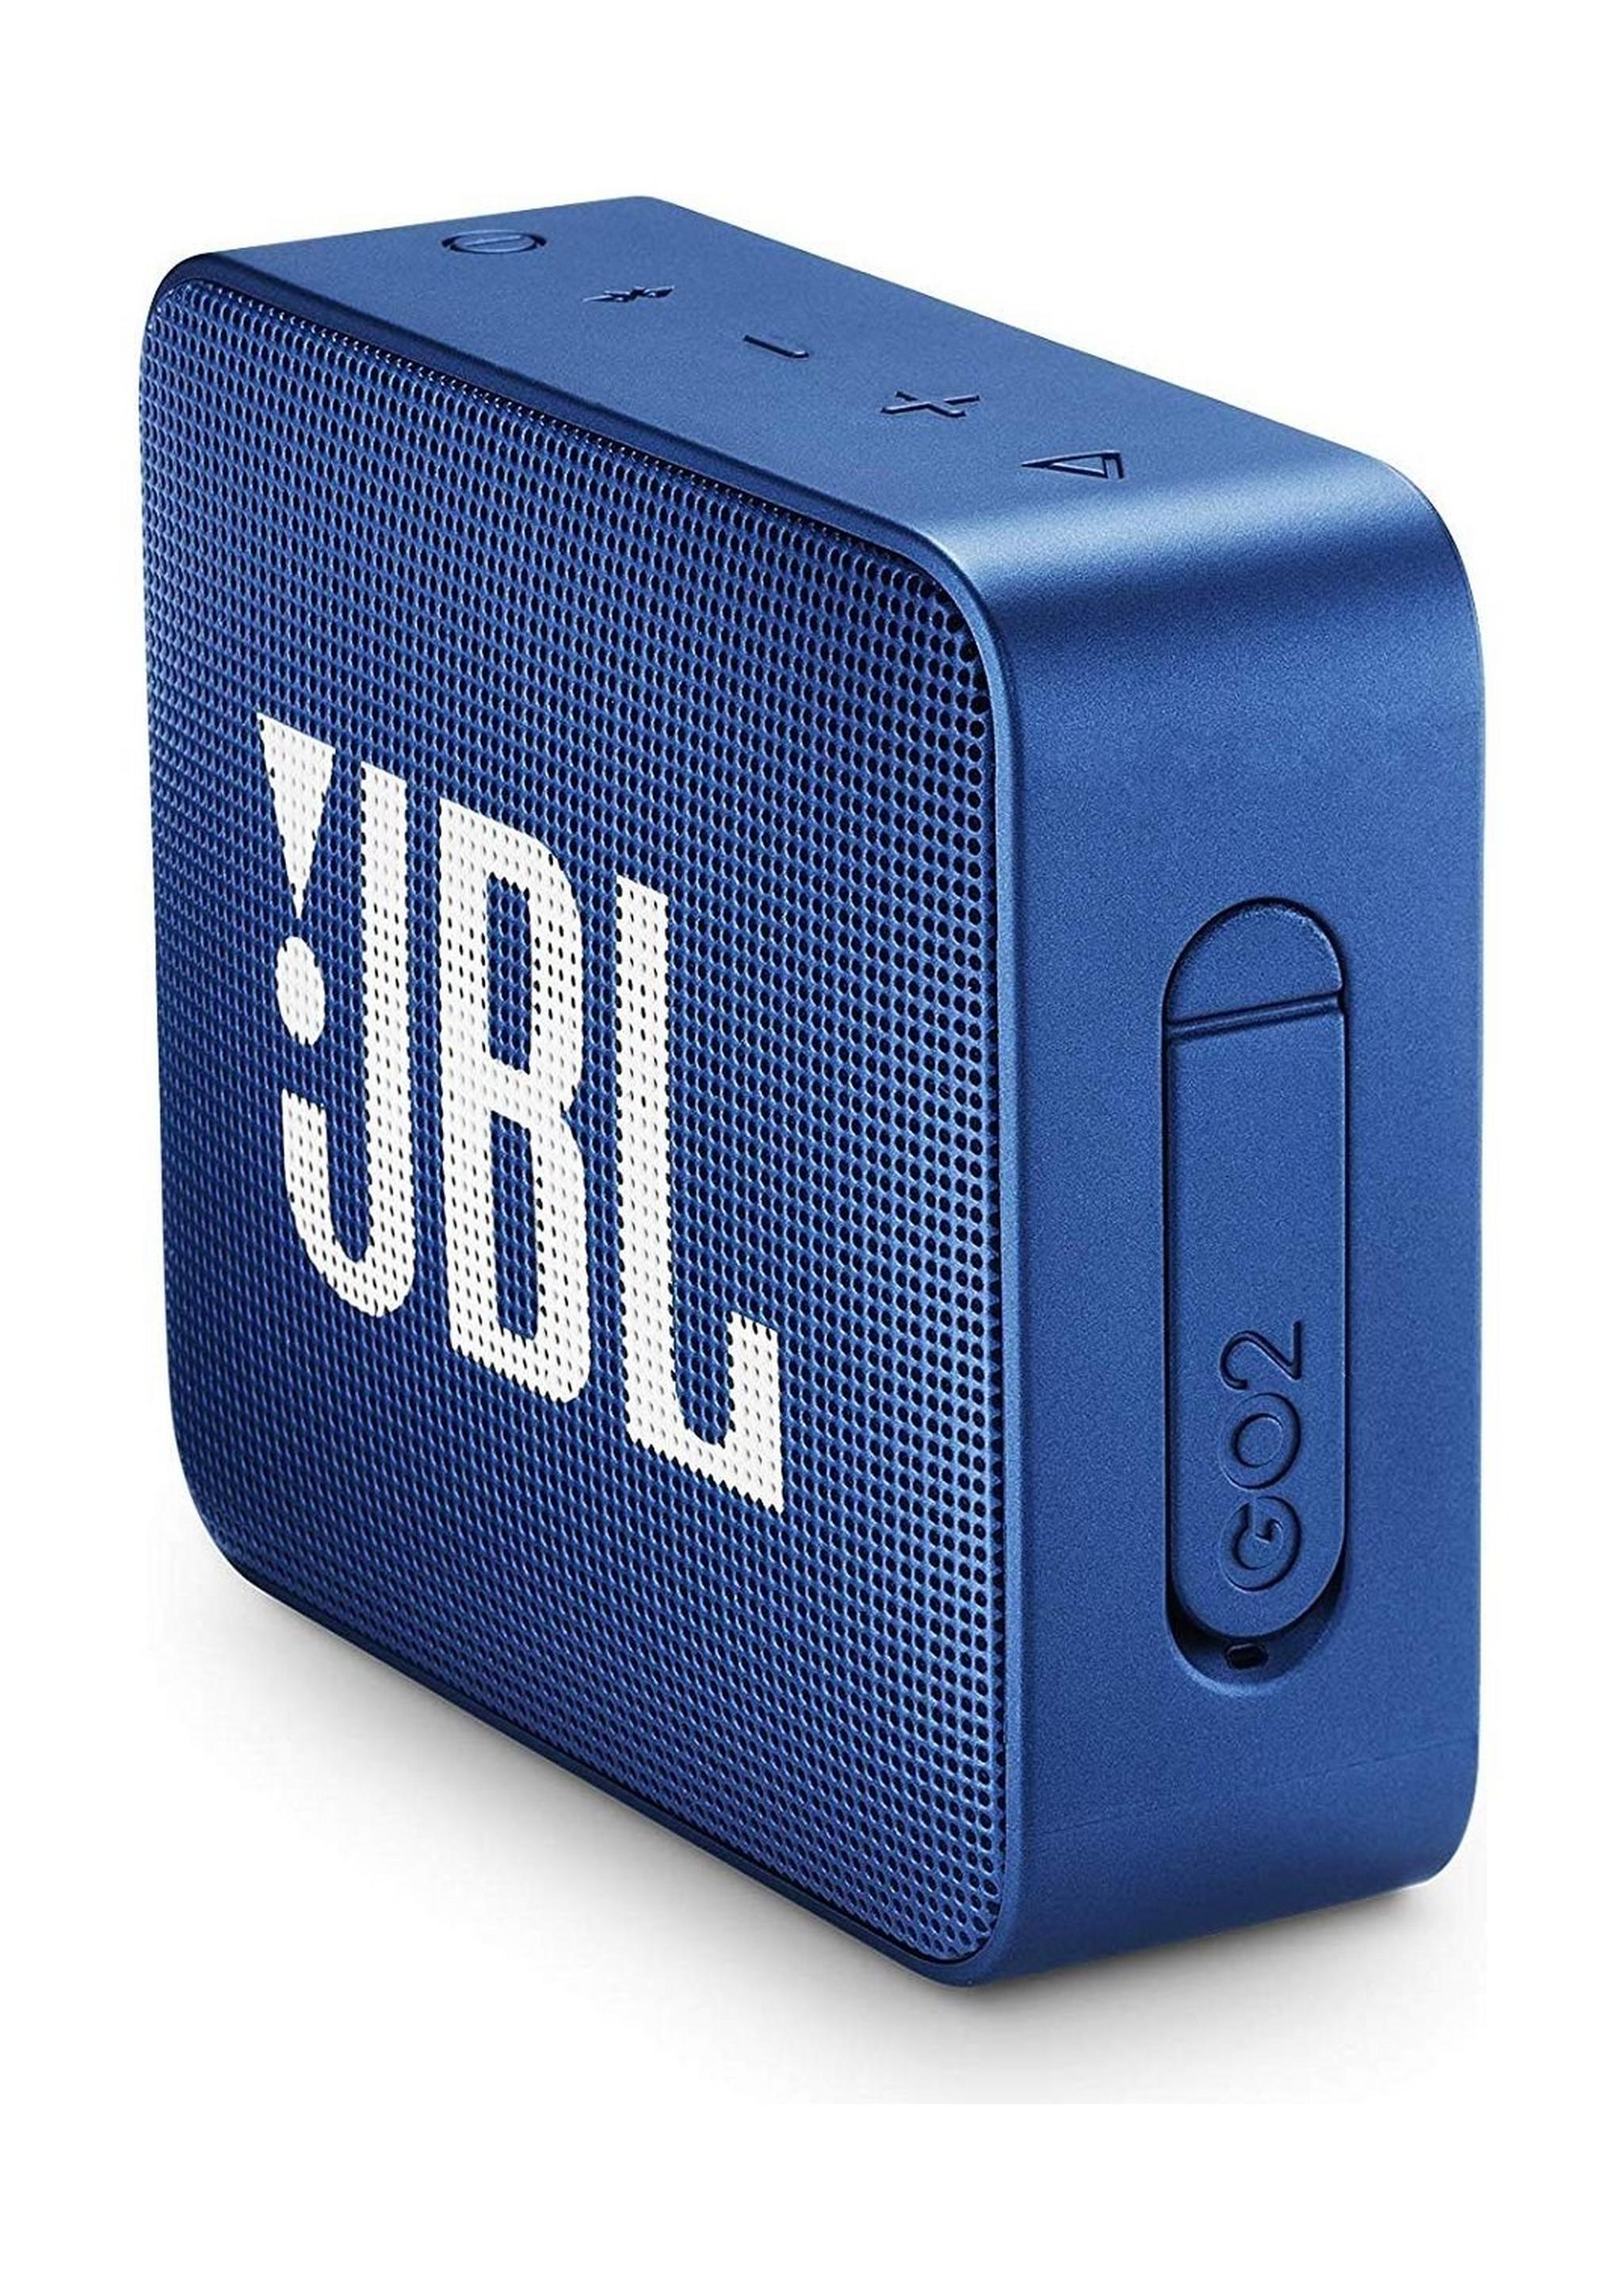 مكبر الصوت المحمول جو٢ لاسلكي بلوتوث من جي بي إل - أزرق